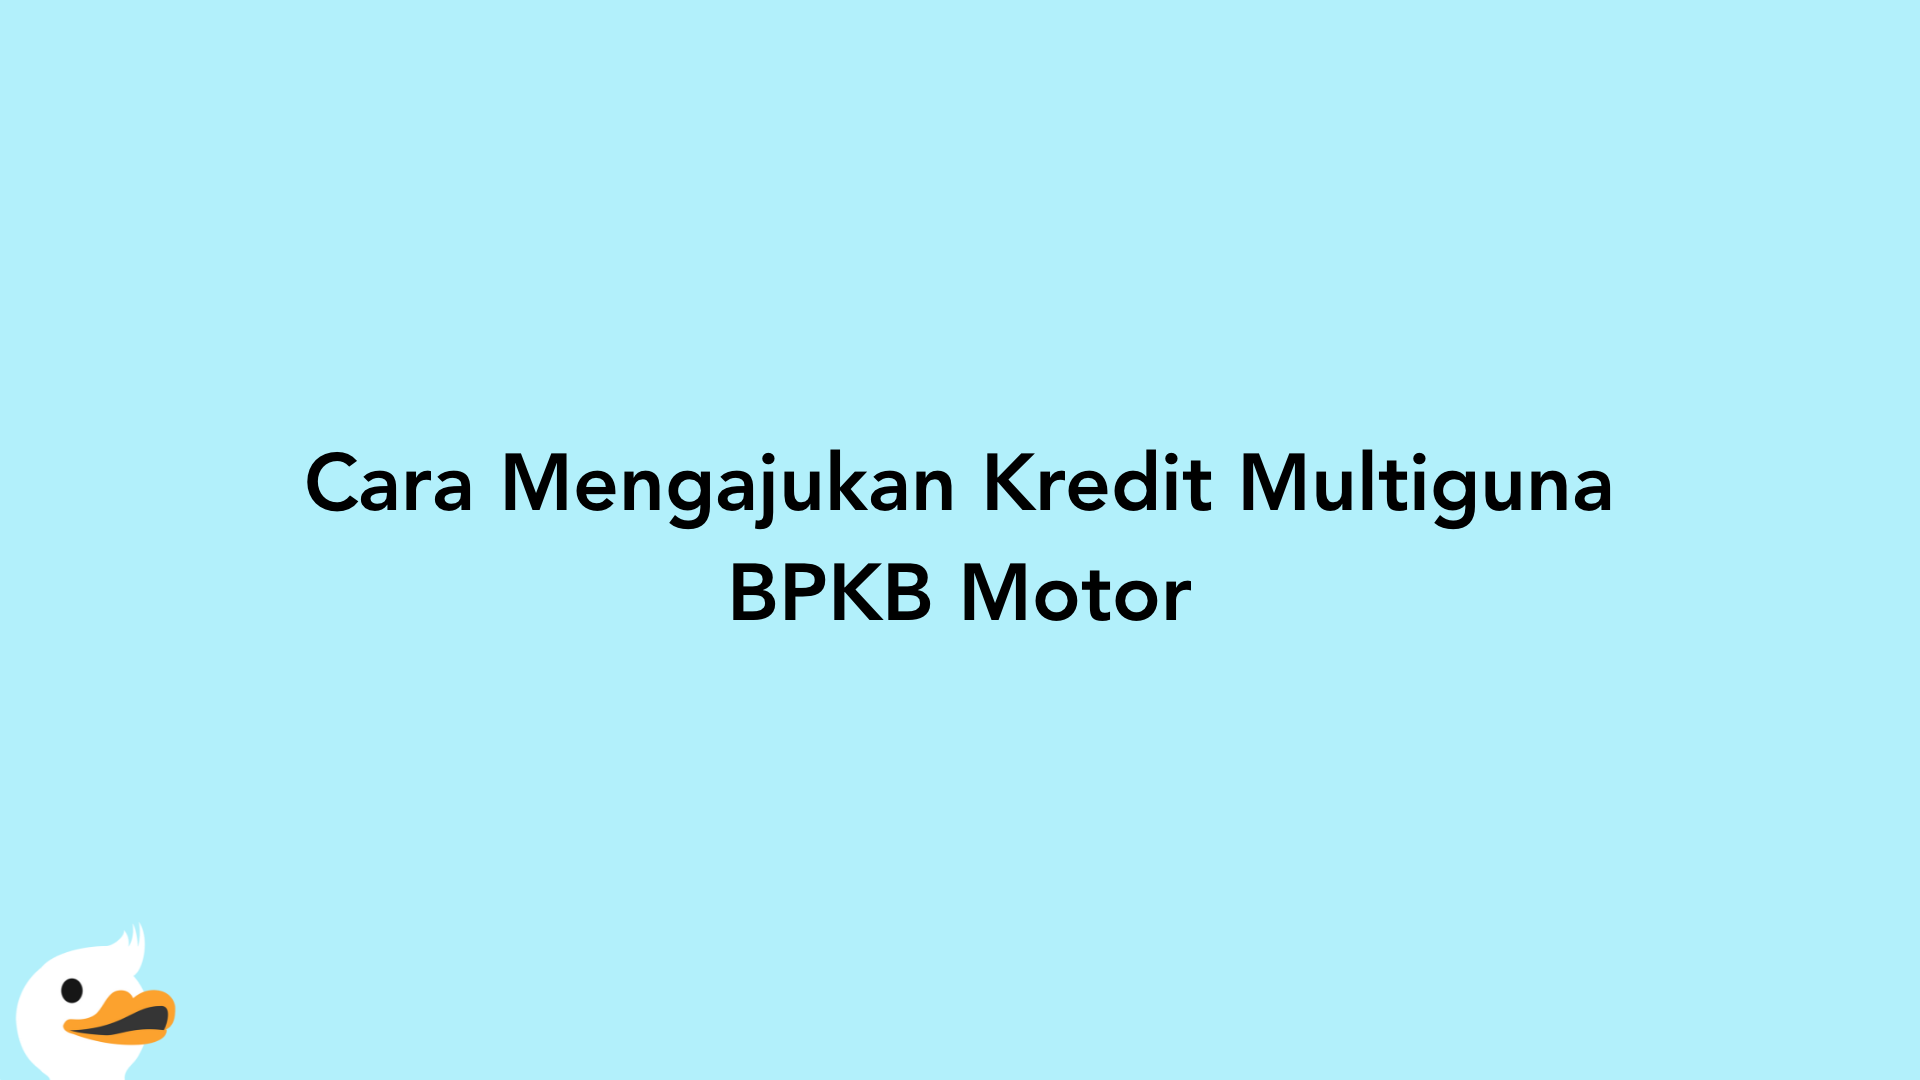 Cara Mengajukan Kredit Multiguna BPKB Motor